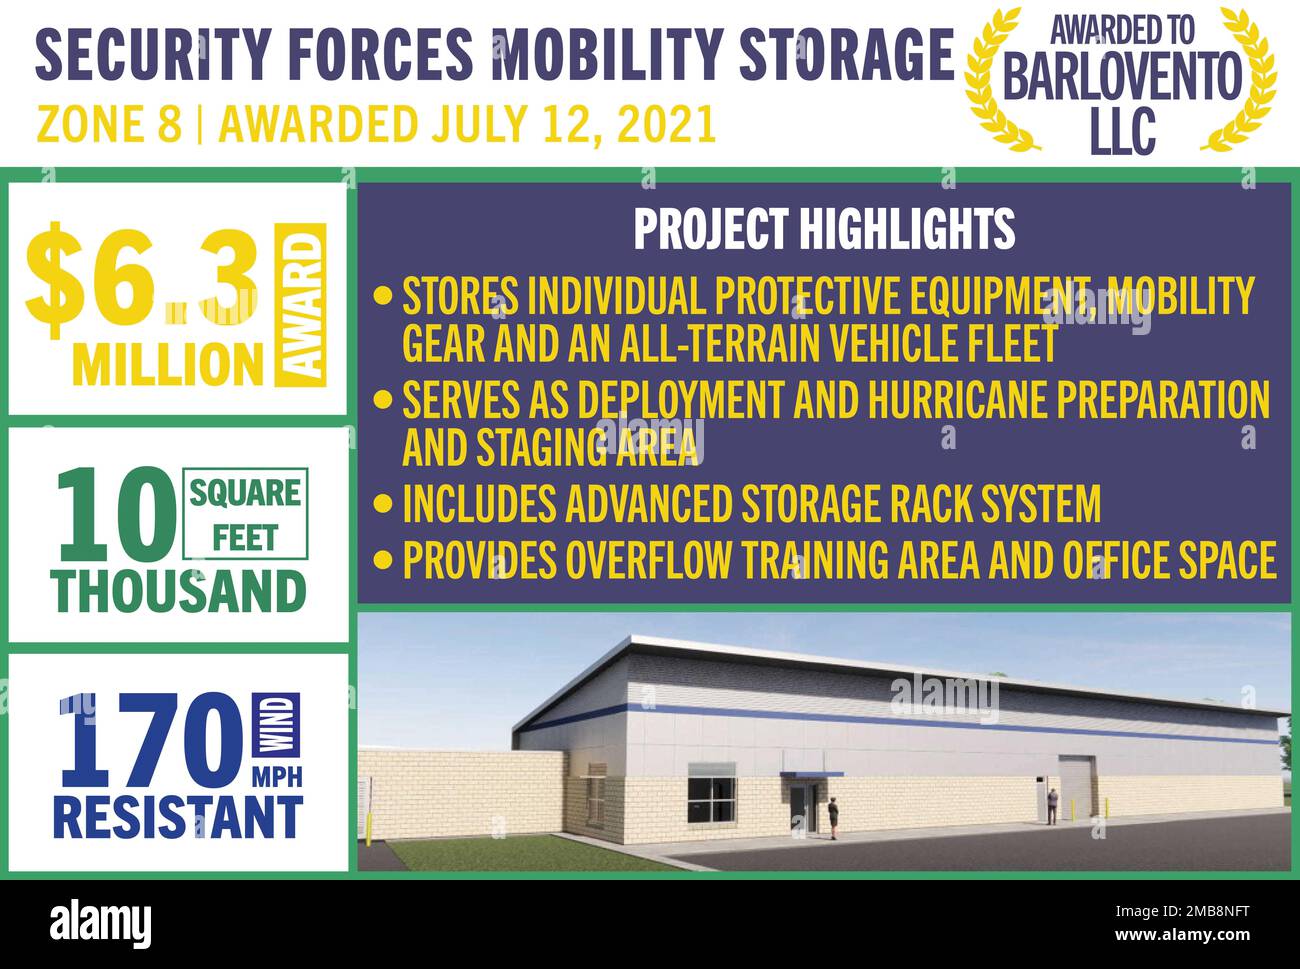 Le contrat de stockage de mobilité des forces de sécurité dans la zone 8 a été attribué à 12 juillet 2021. Le prix de $6,3 millions a été décerné à Barlovento, LLC. (É.-U. Graphique Force aérienne) Banque D'Images